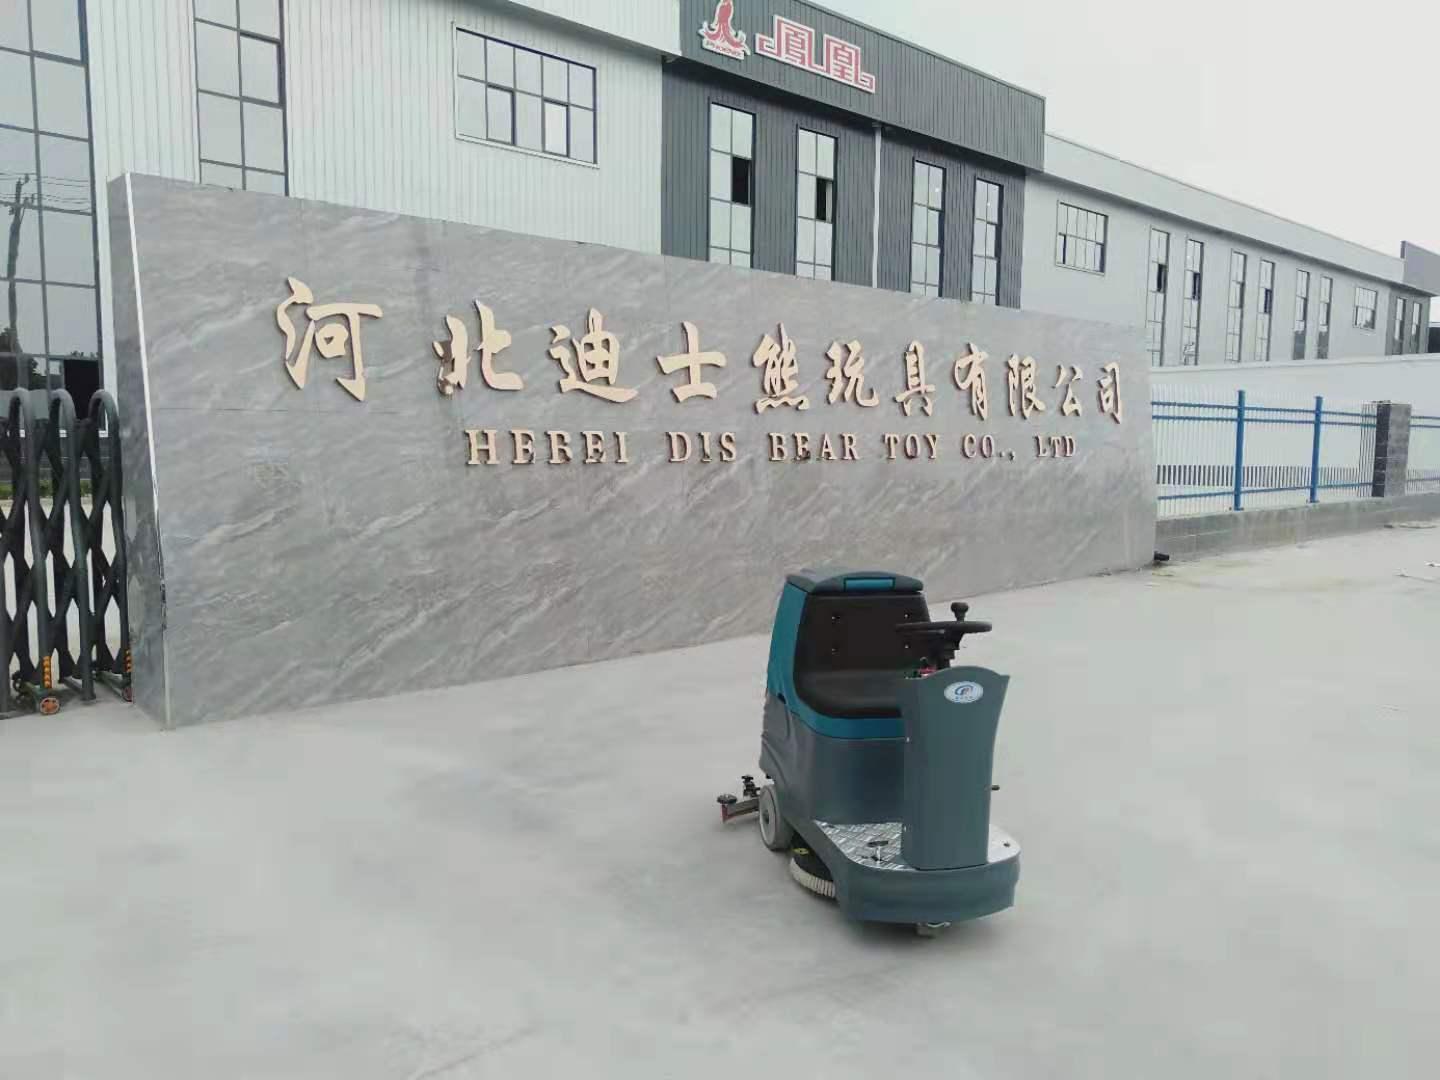 山西省晋中市KR-XJ60D驾驶式洗地机电动洗地机